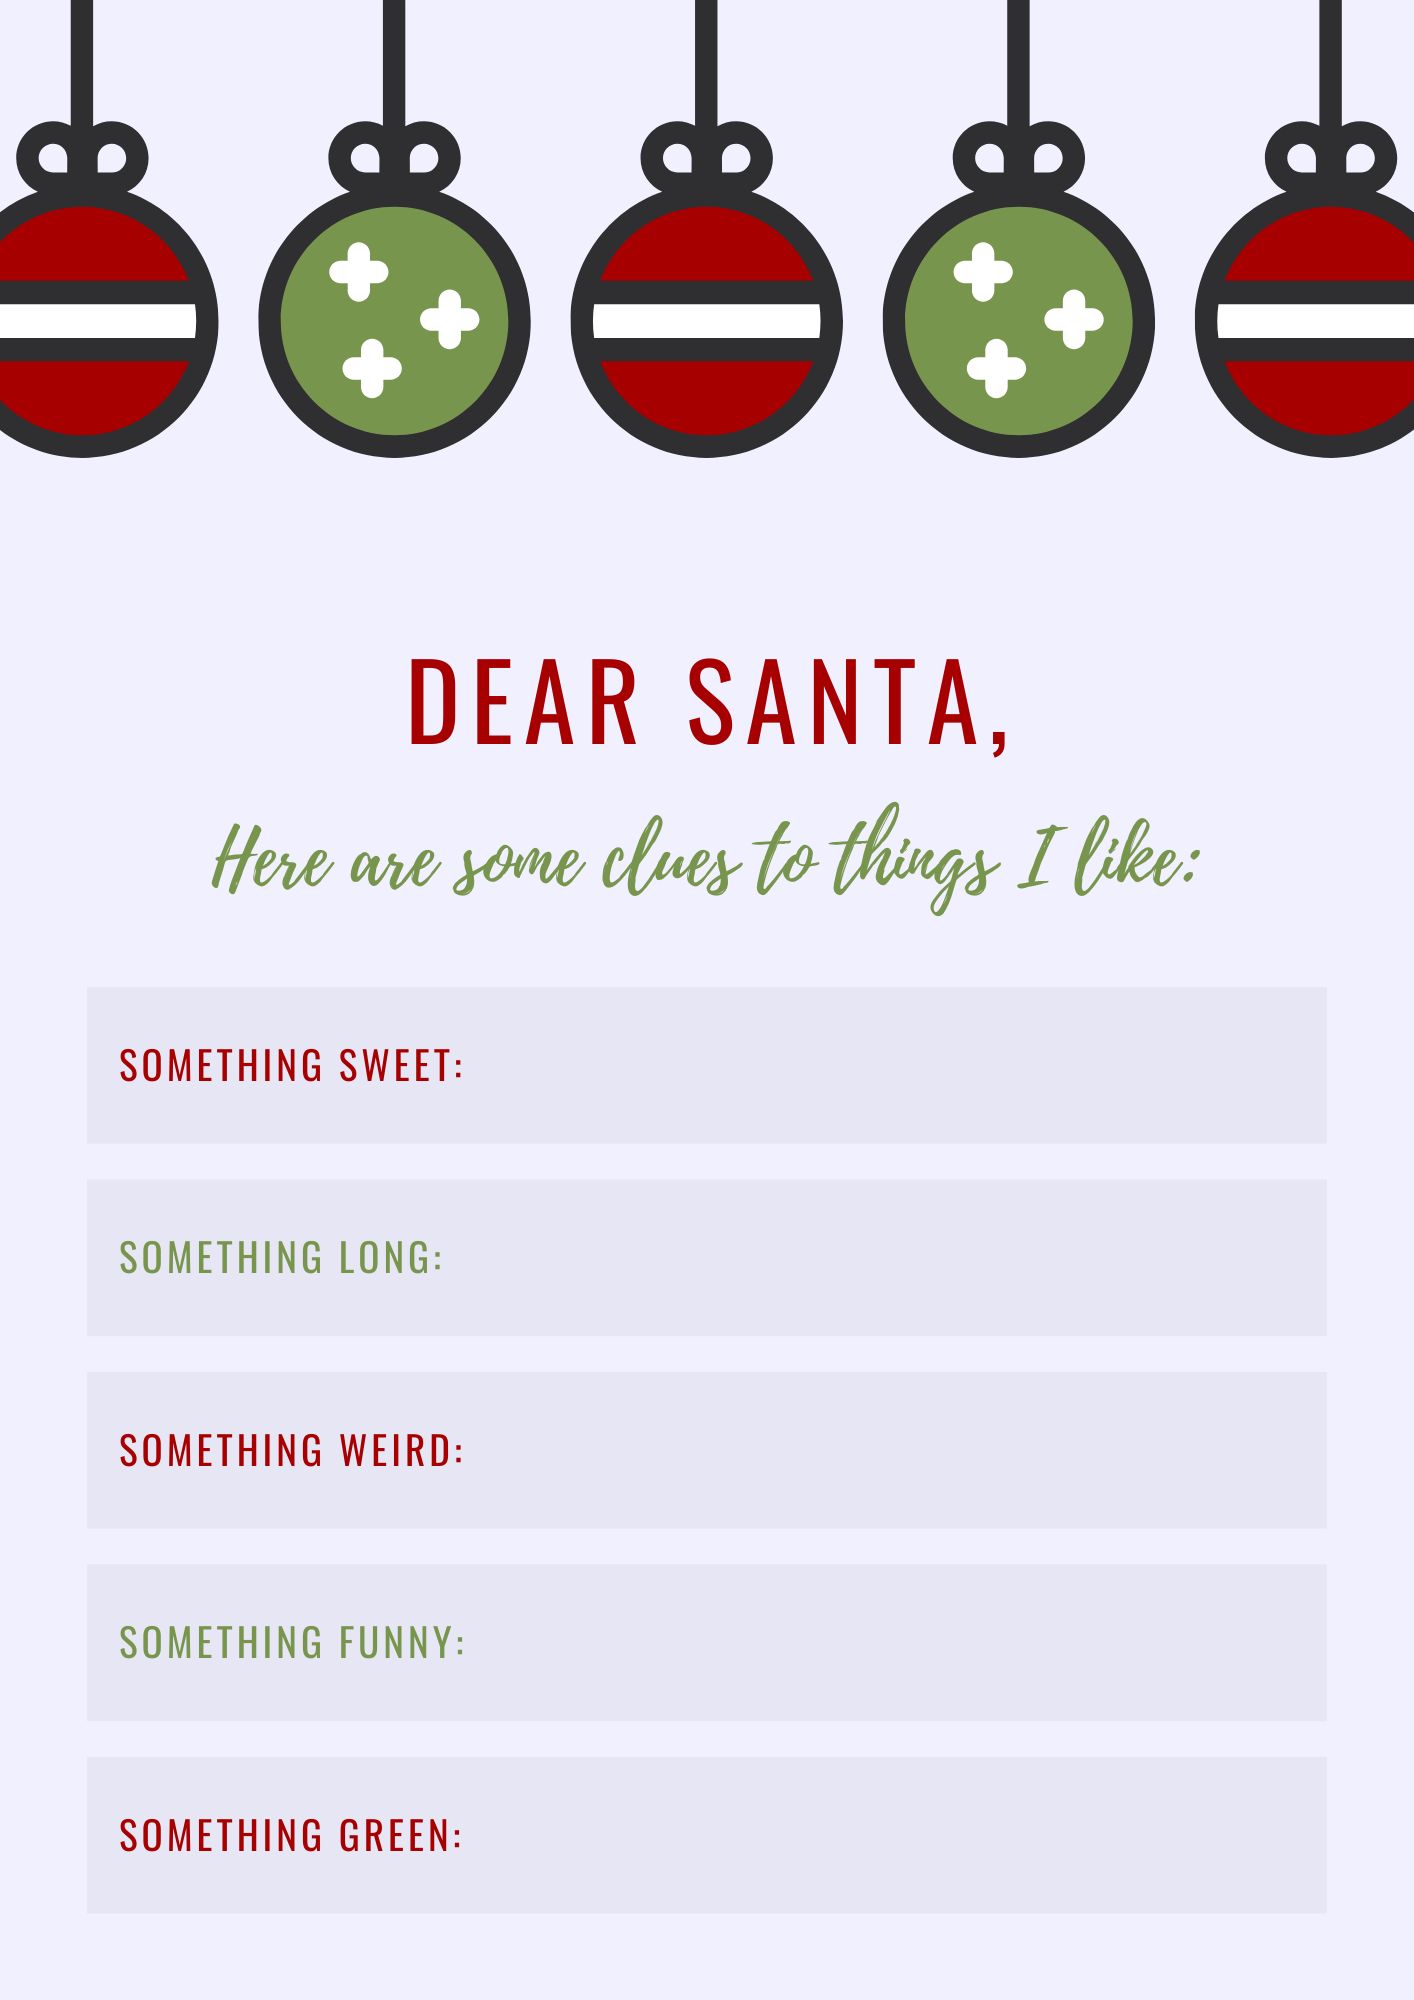 Printable Christmas Wish List Template